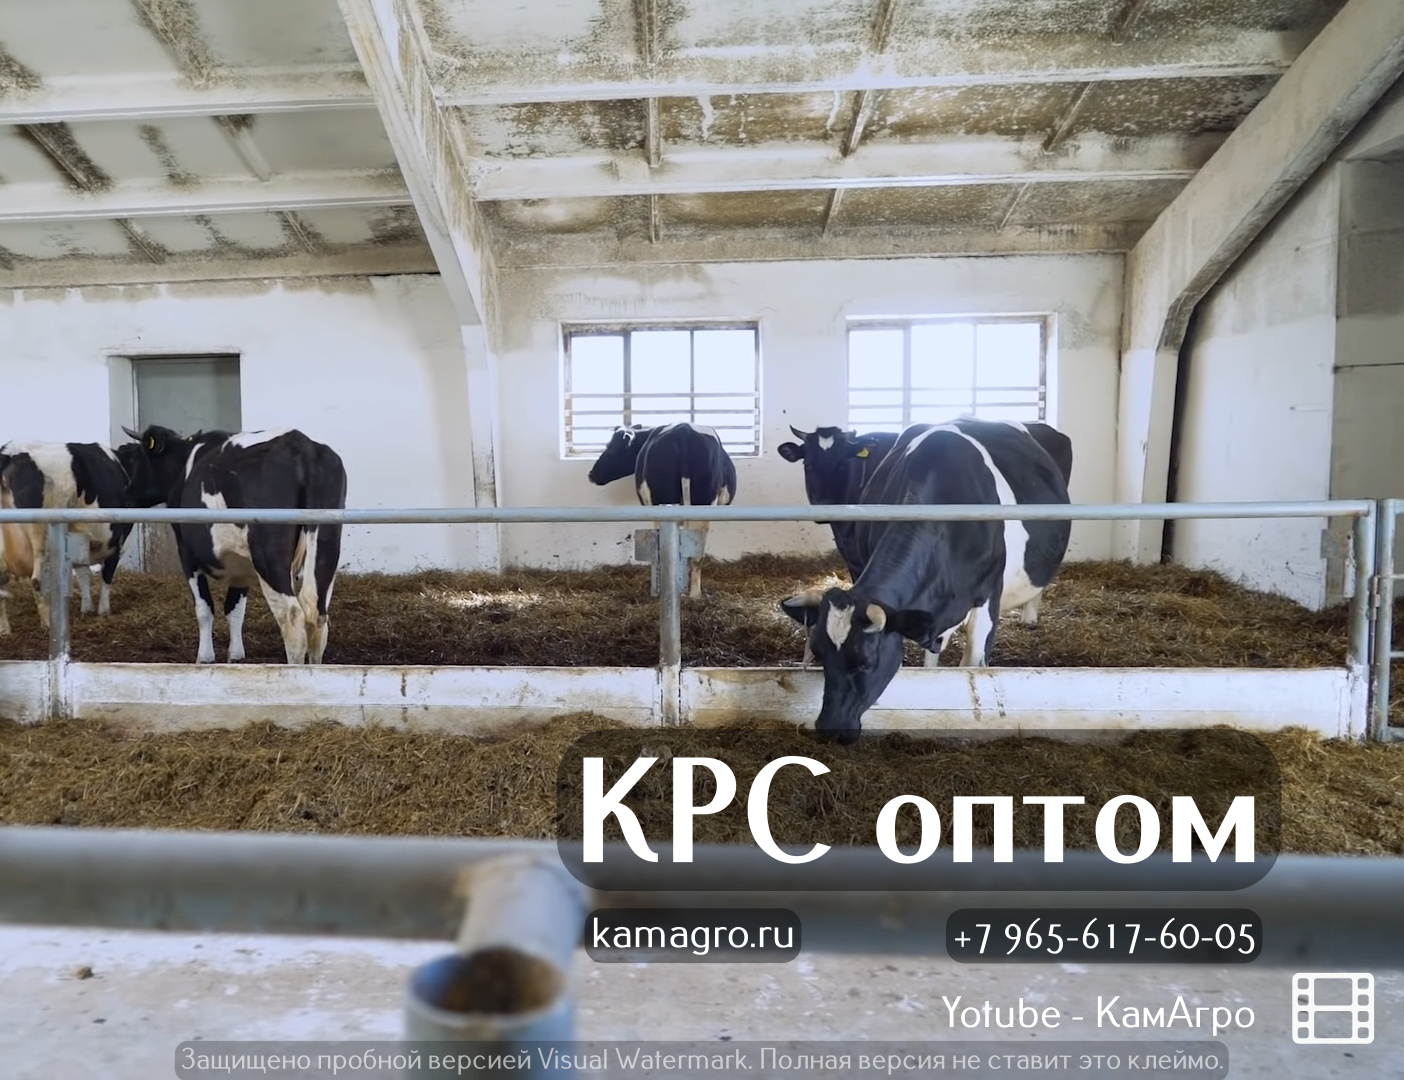 Продажа высокопродуктивных коров молочных пород оптом живым весом в городе Набережные Челны, фото 1, телефон продавца: +7 (965) 617-60-05